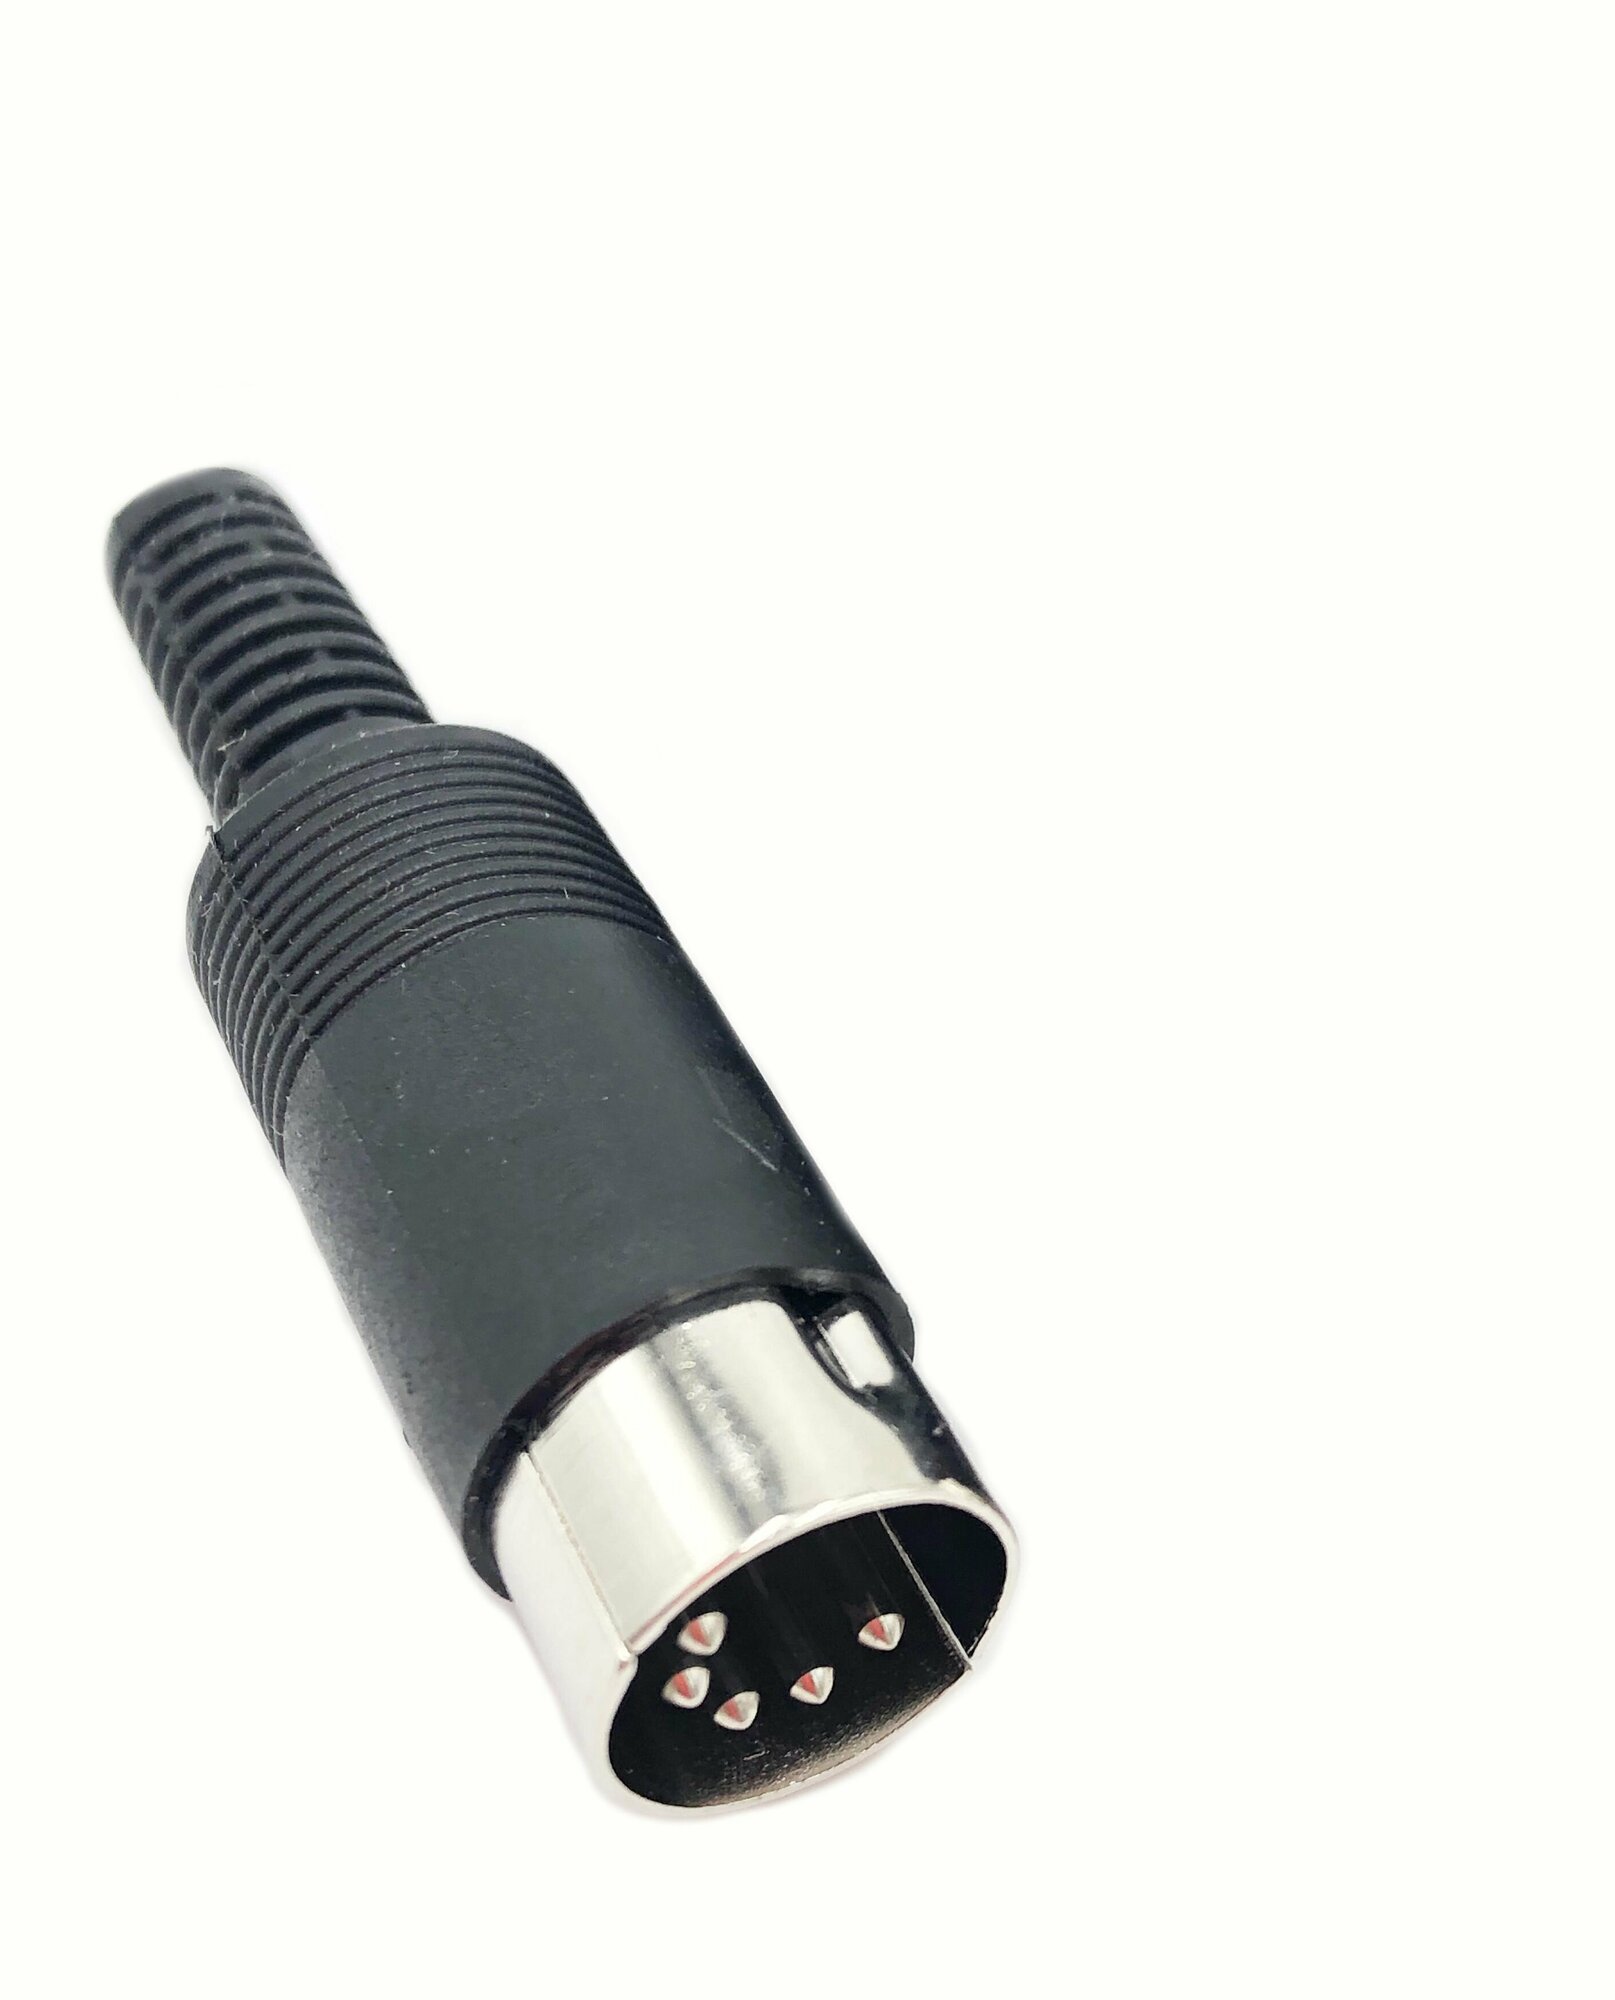 Разъем DIN 5 pin штекер пластик на кабель под пайку ( 1 штука)